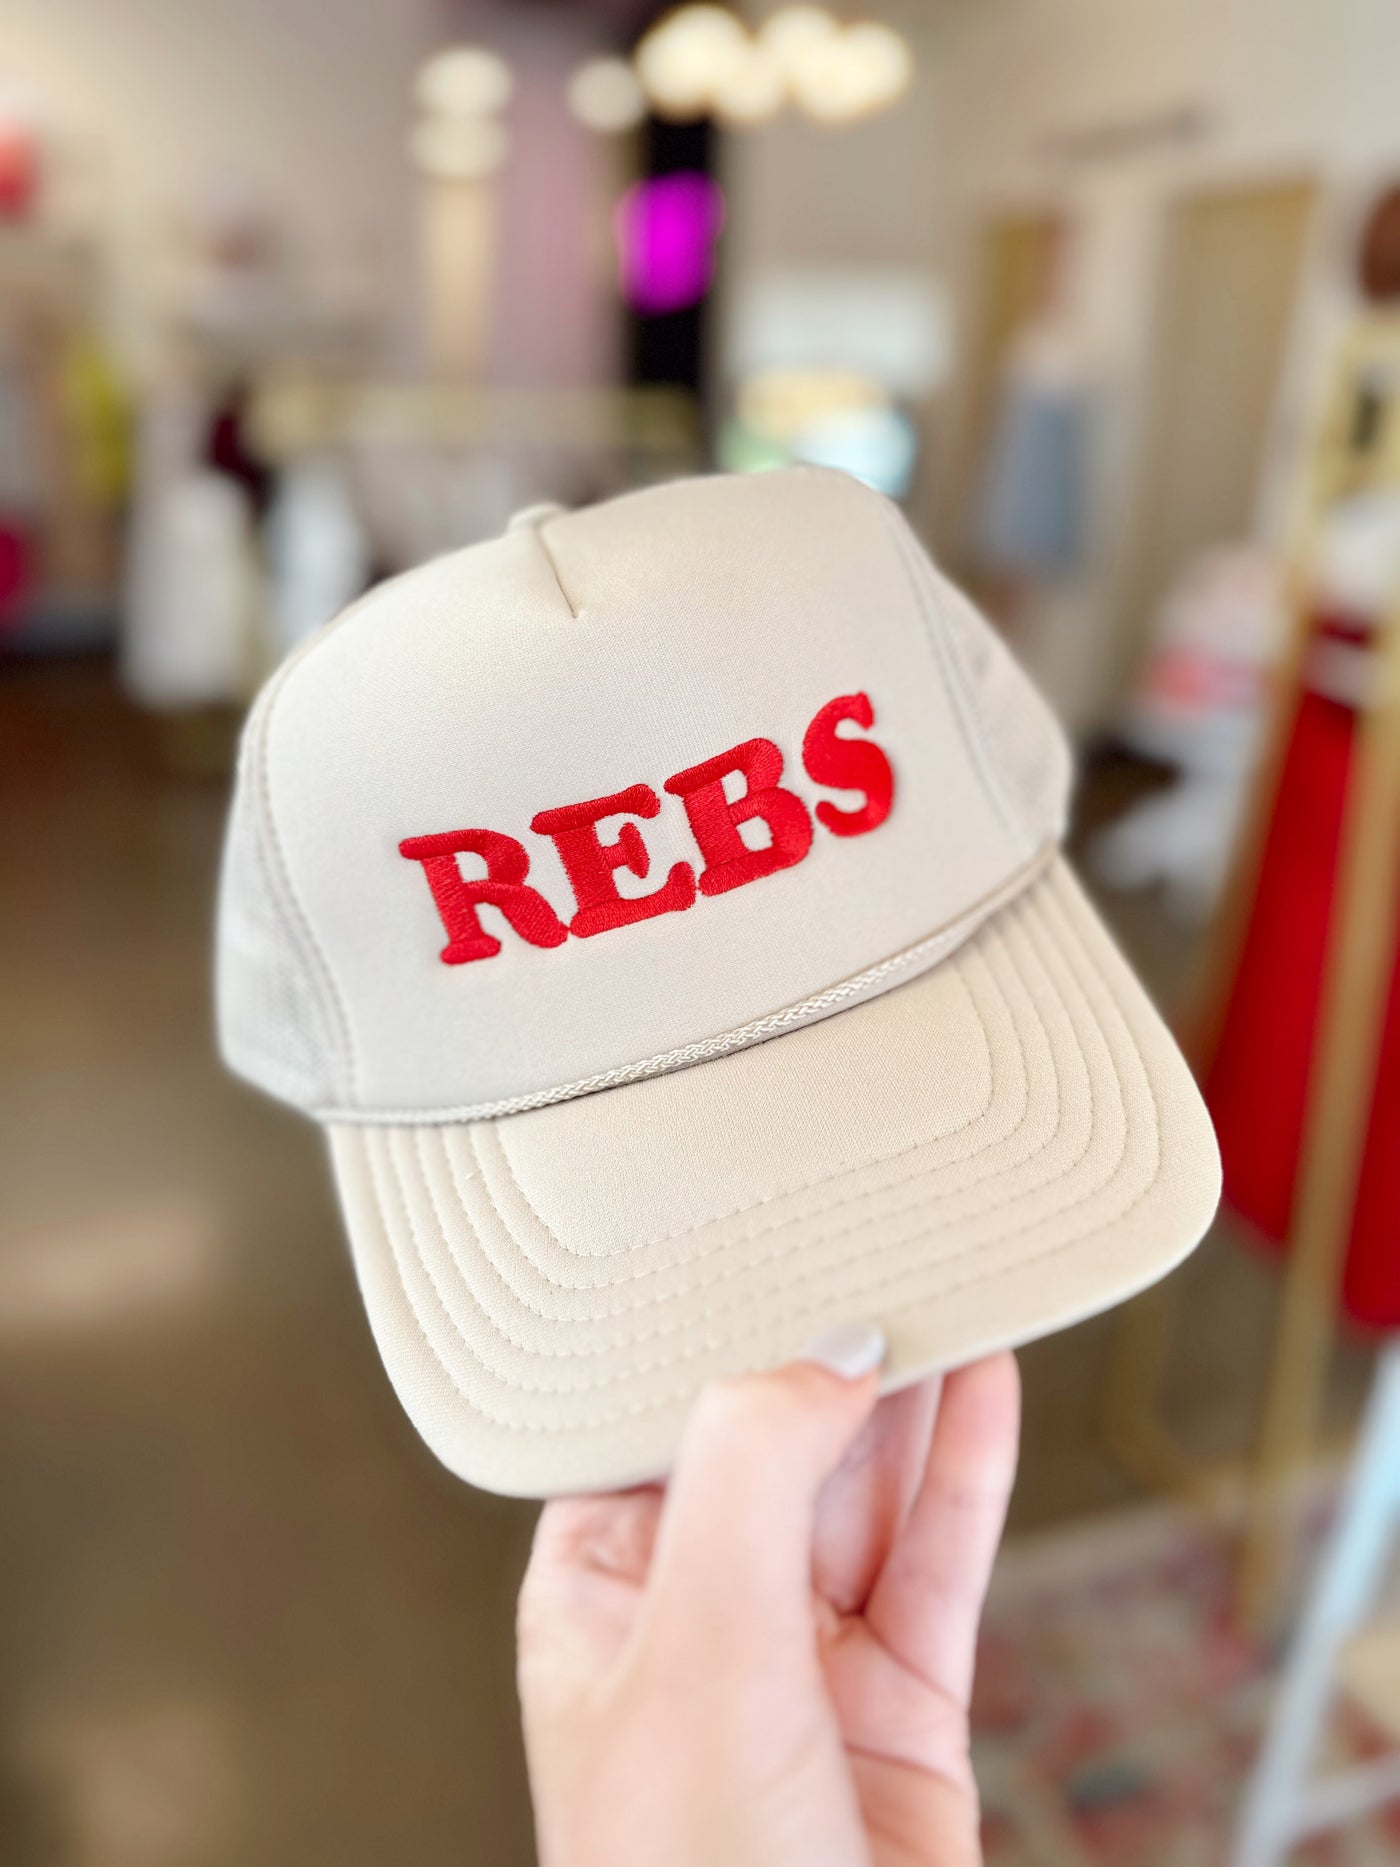 REBS Trucker Hat